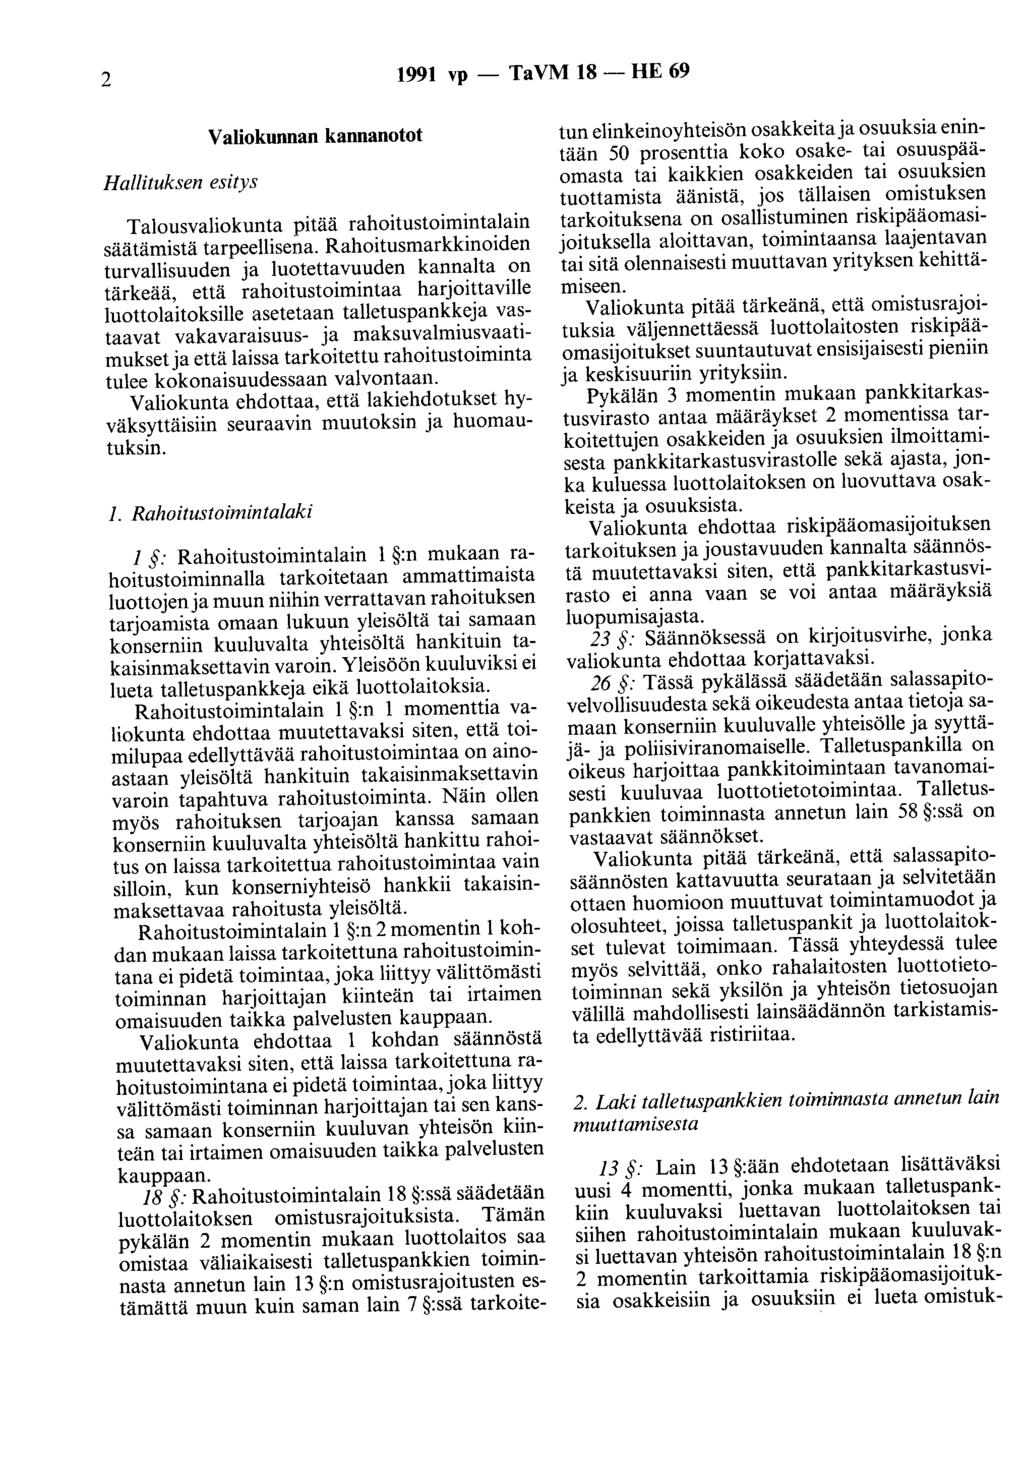 2 1991 vp- TaVM 18- HE 69 Hallituksen esitys Valiokunnan kannanotot Talousvaliokunta pitää rahoitustoimintalain säätämistä tarpeellisena.